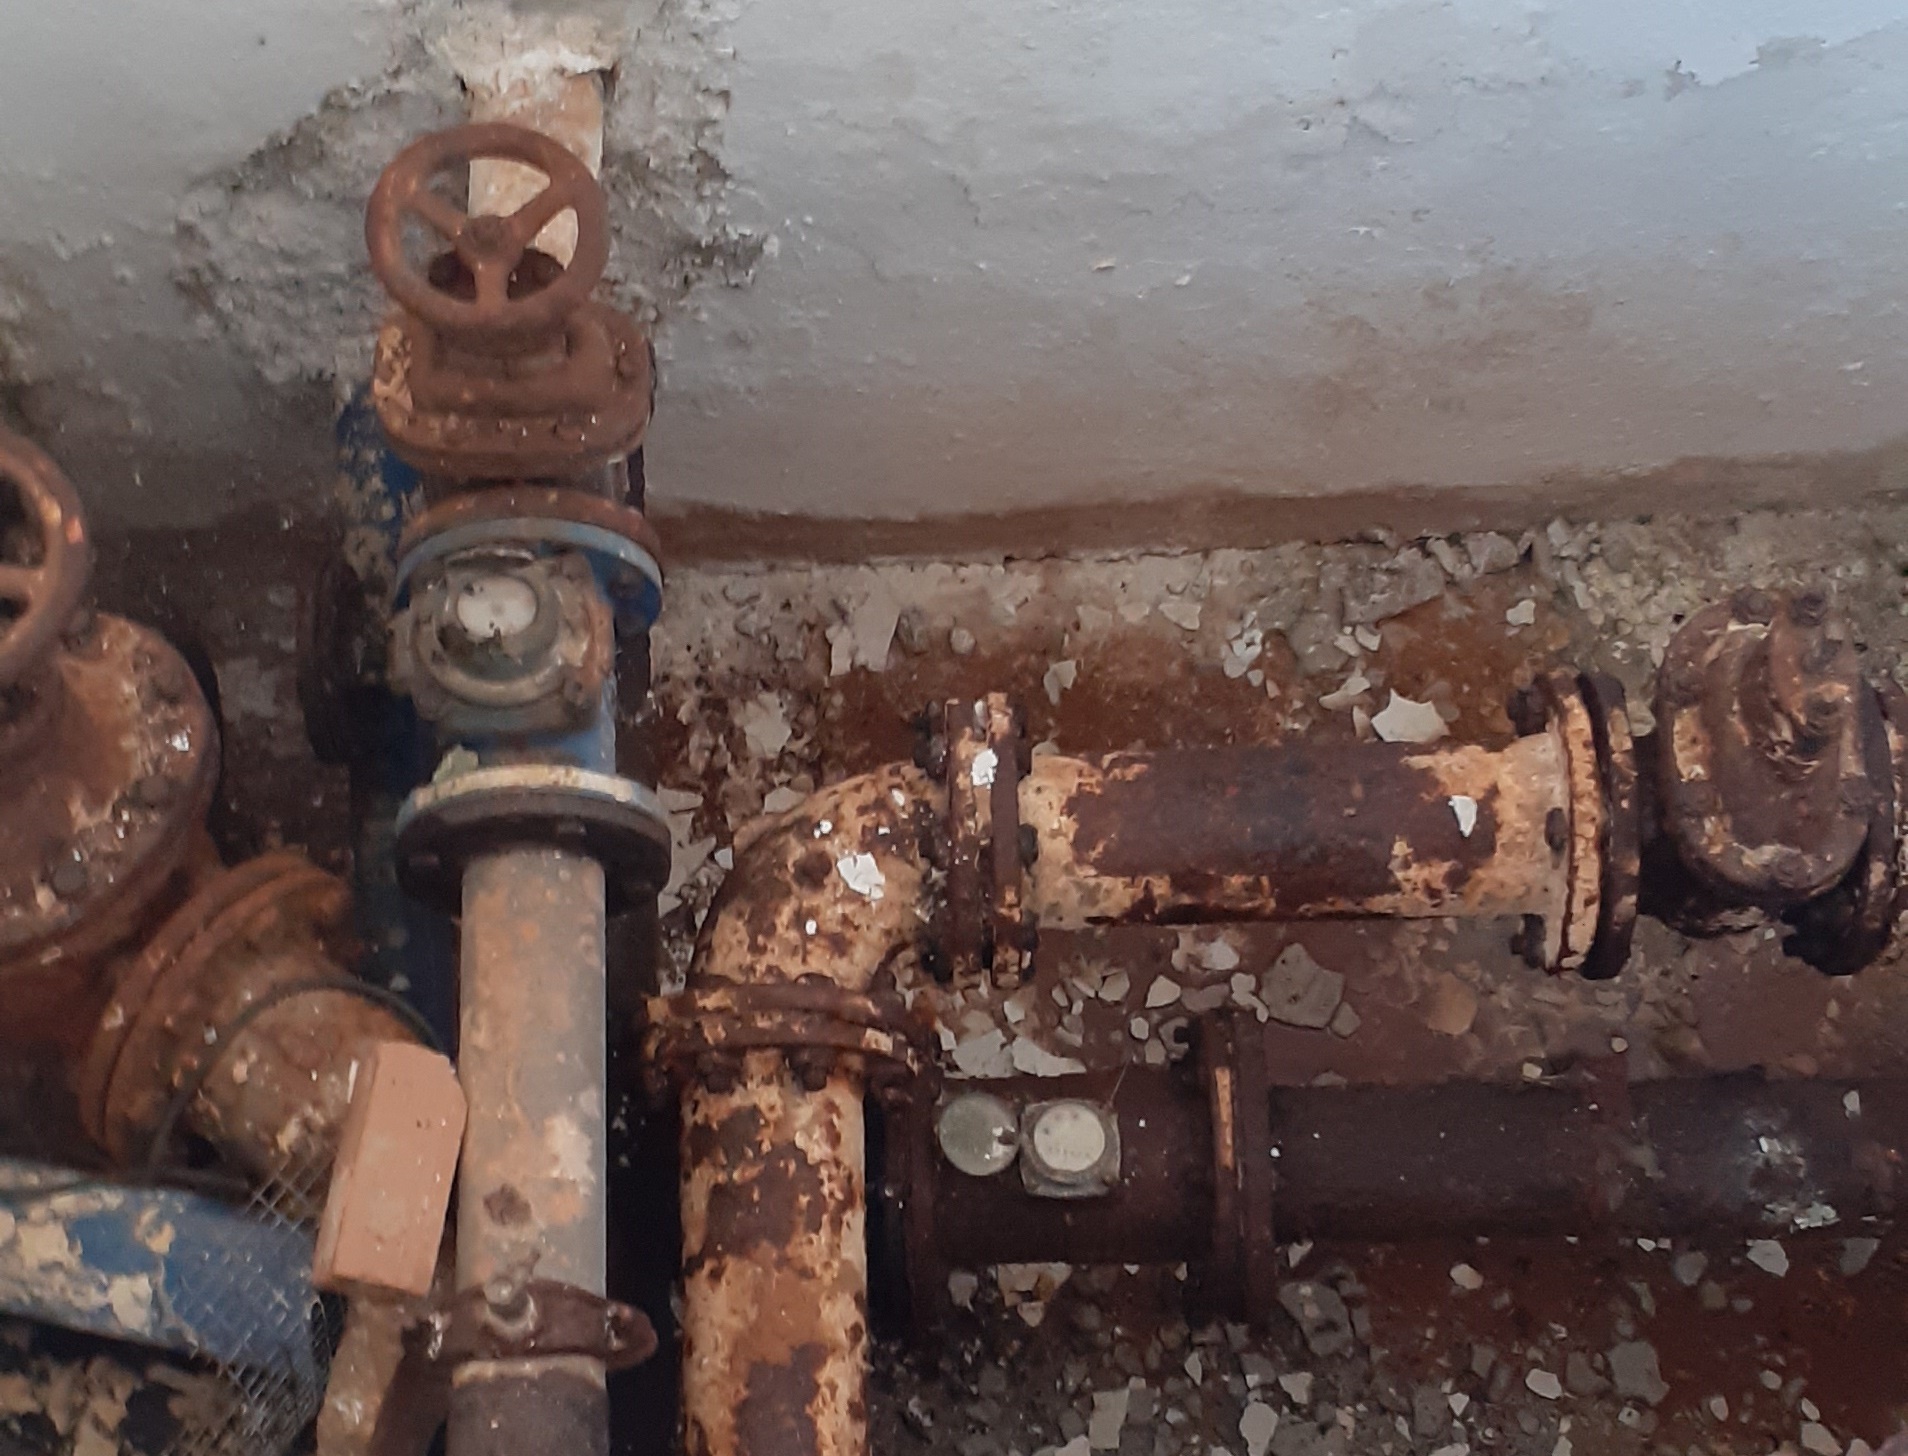 Σε άθλια κατάσταση υδραγωγείο στον Αποκόρωνα – Τι καταγγέλλει η αντιπολίτευση (φωτο)